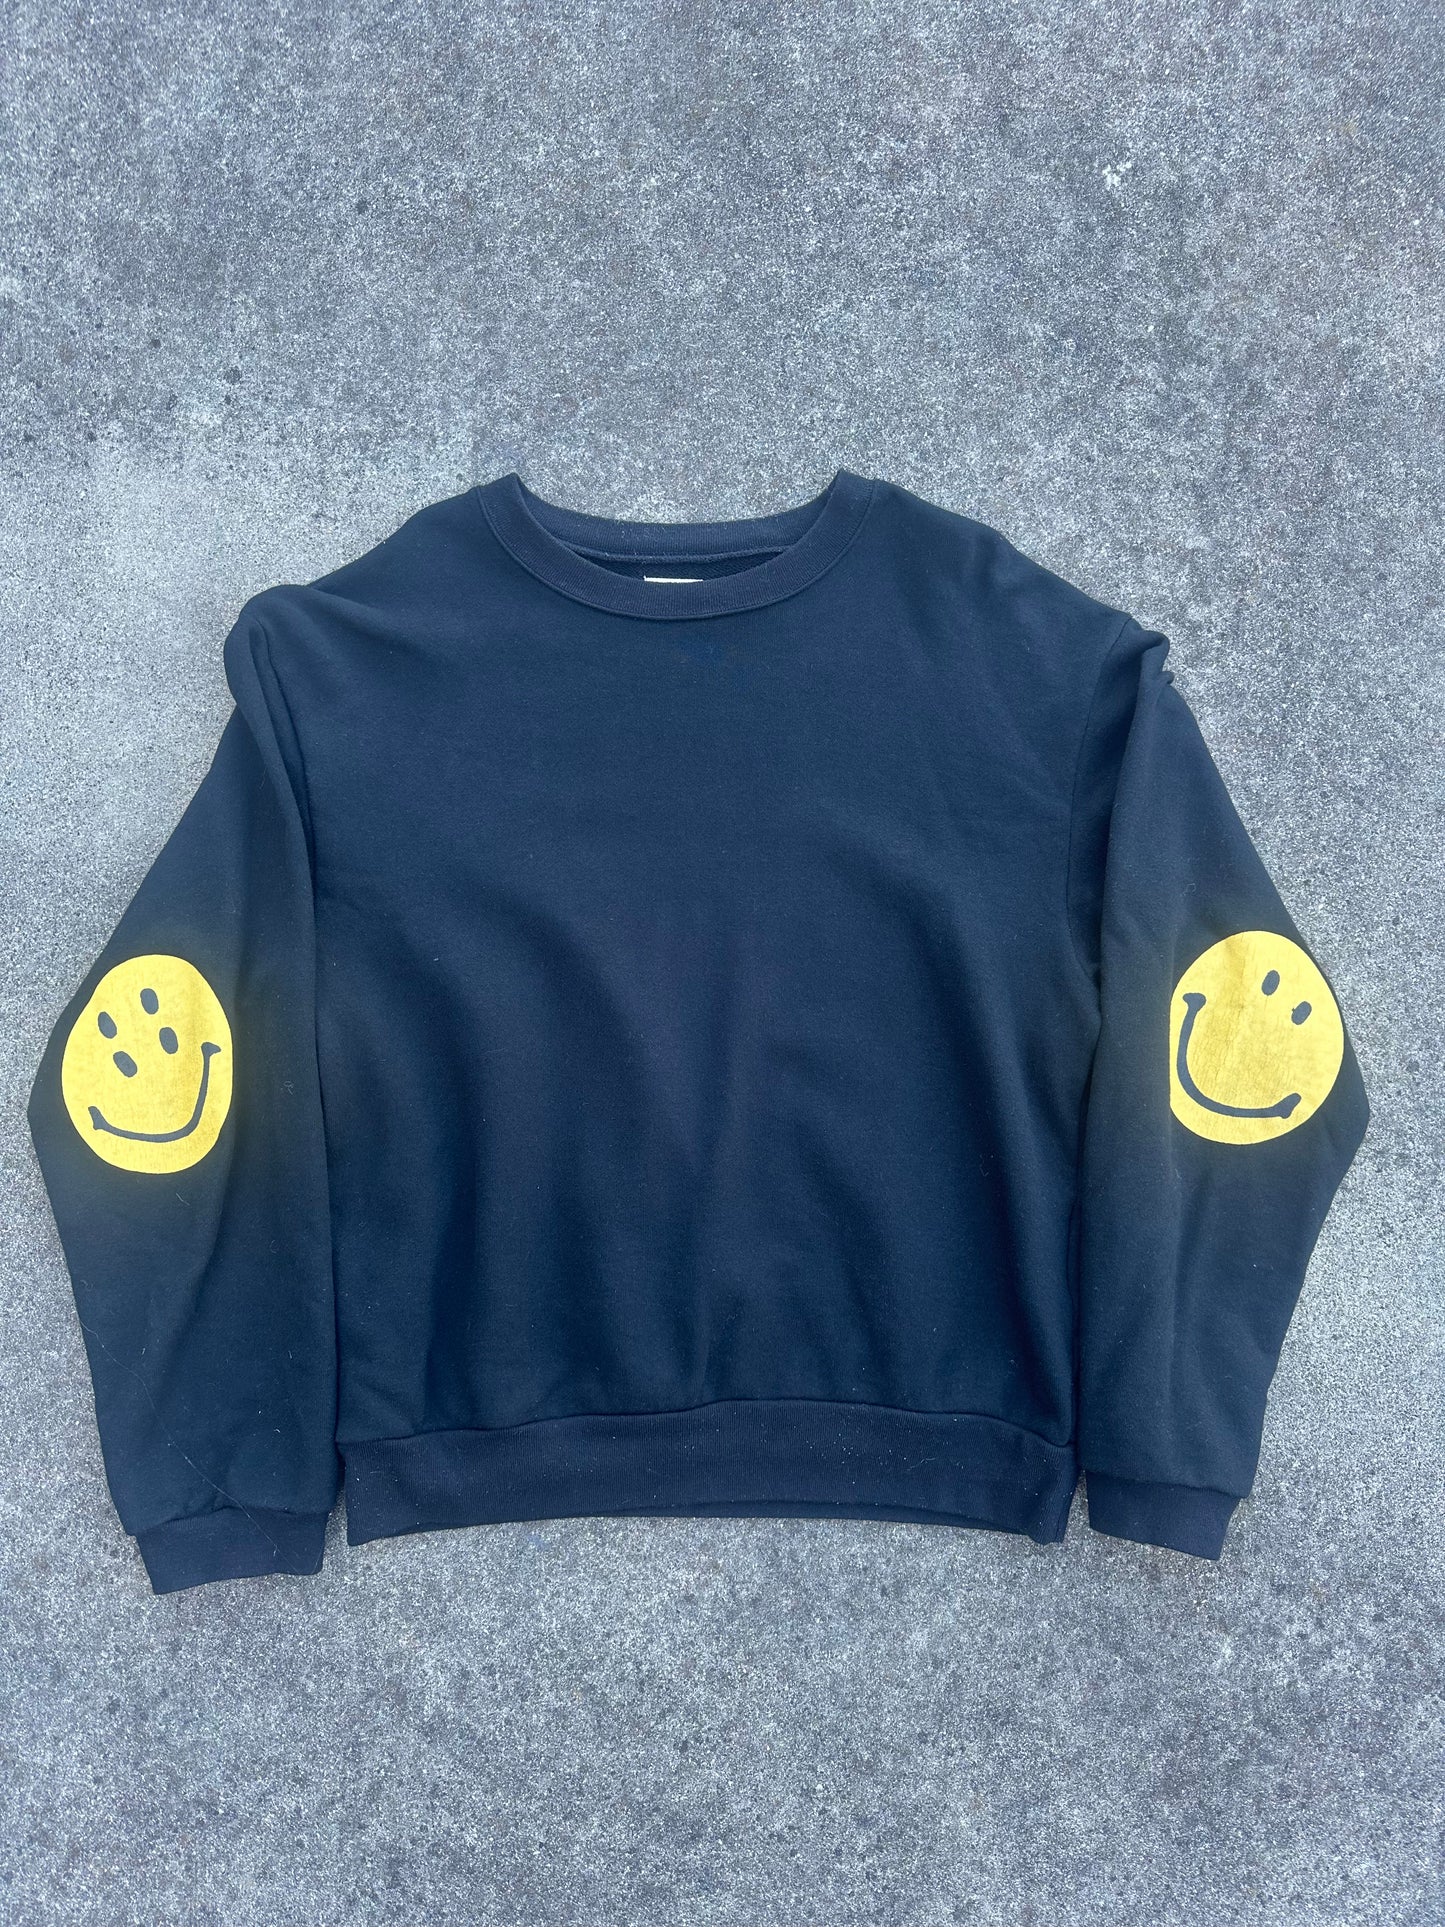 Kapital Smiley Crewneck Sweatshirt